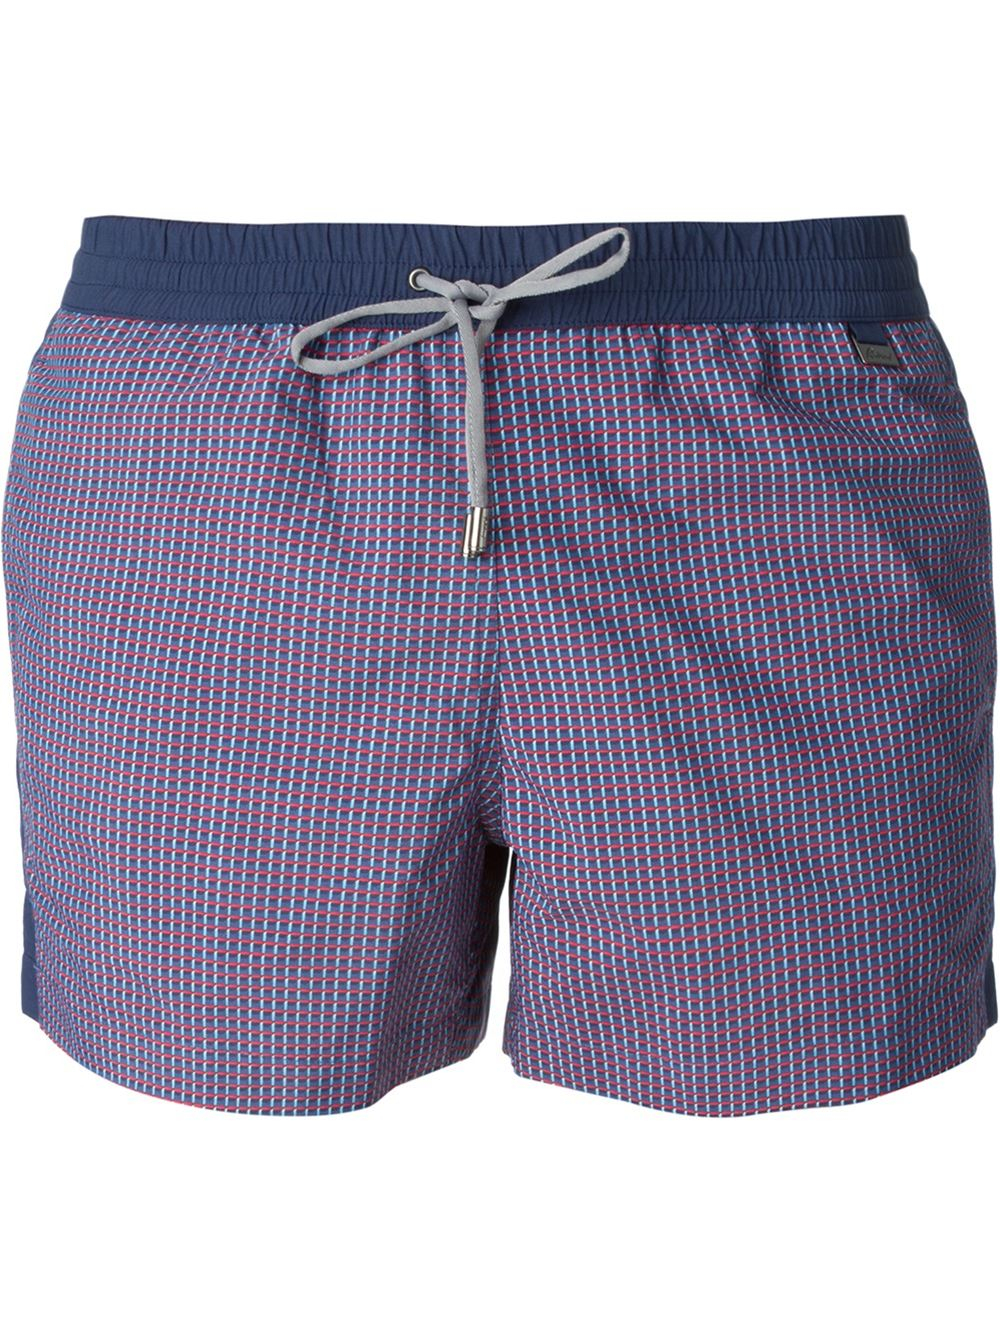 Lyst - Brioni Micro-Check Swim Shorts in Blue for Men